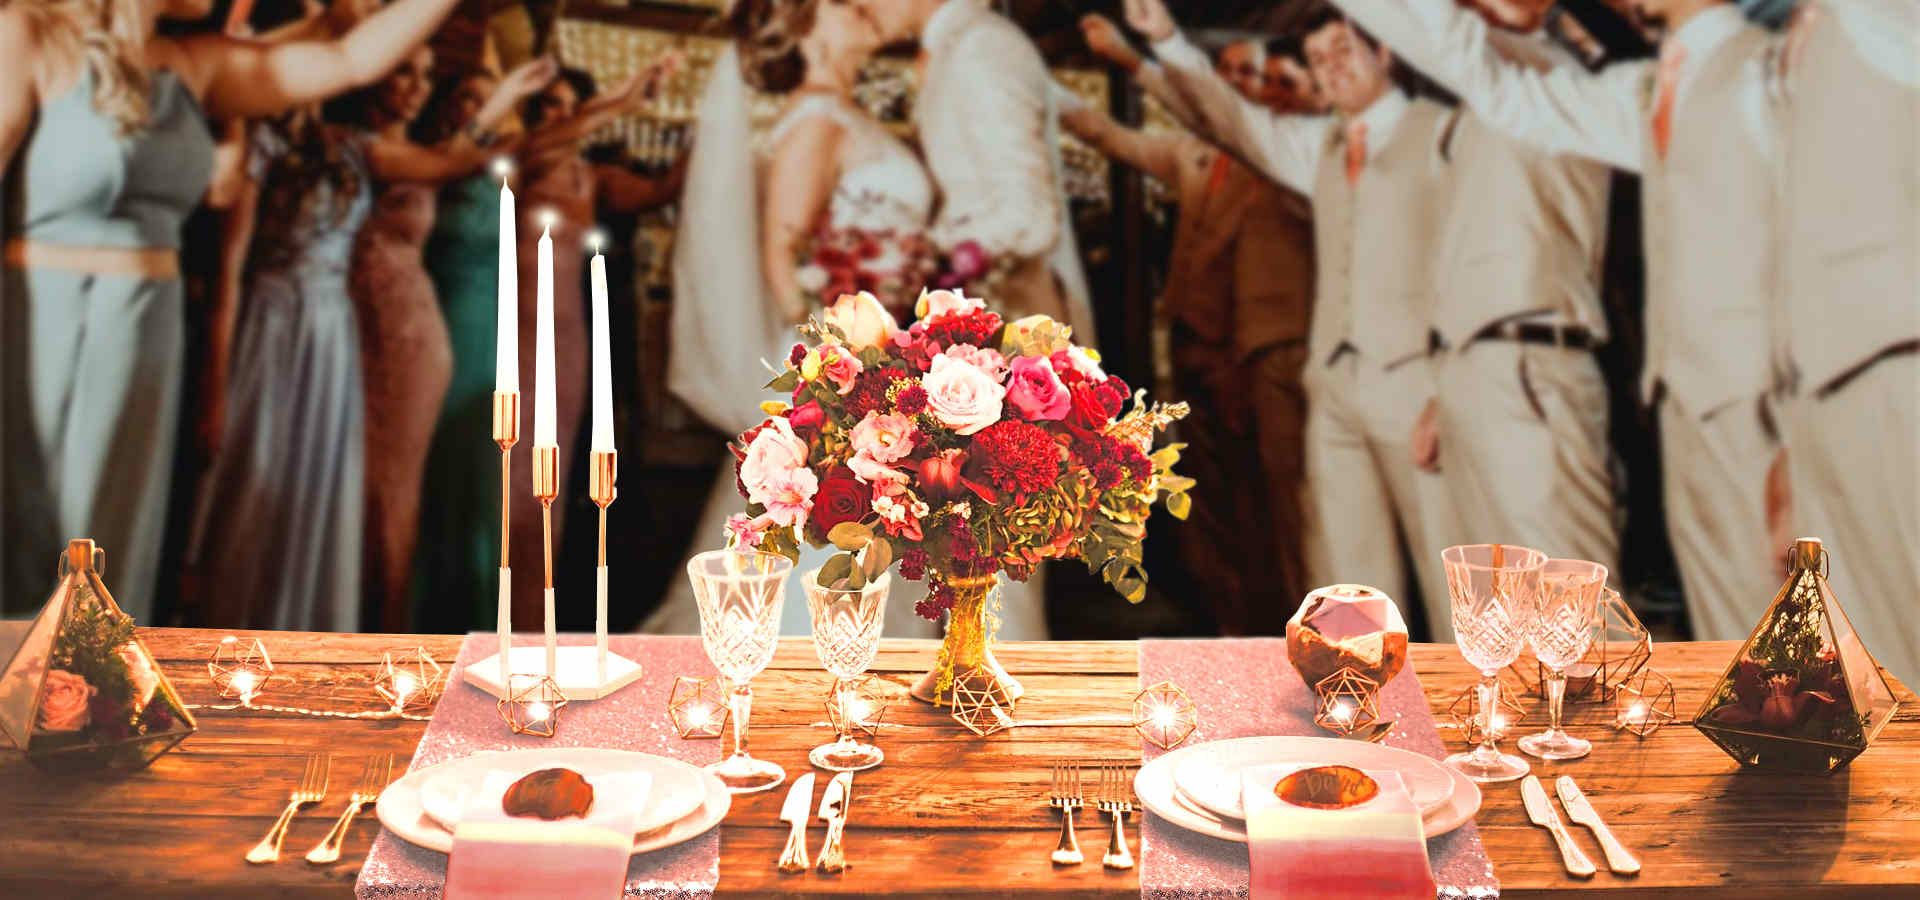 decoration-de-table-mariage-rose-gold